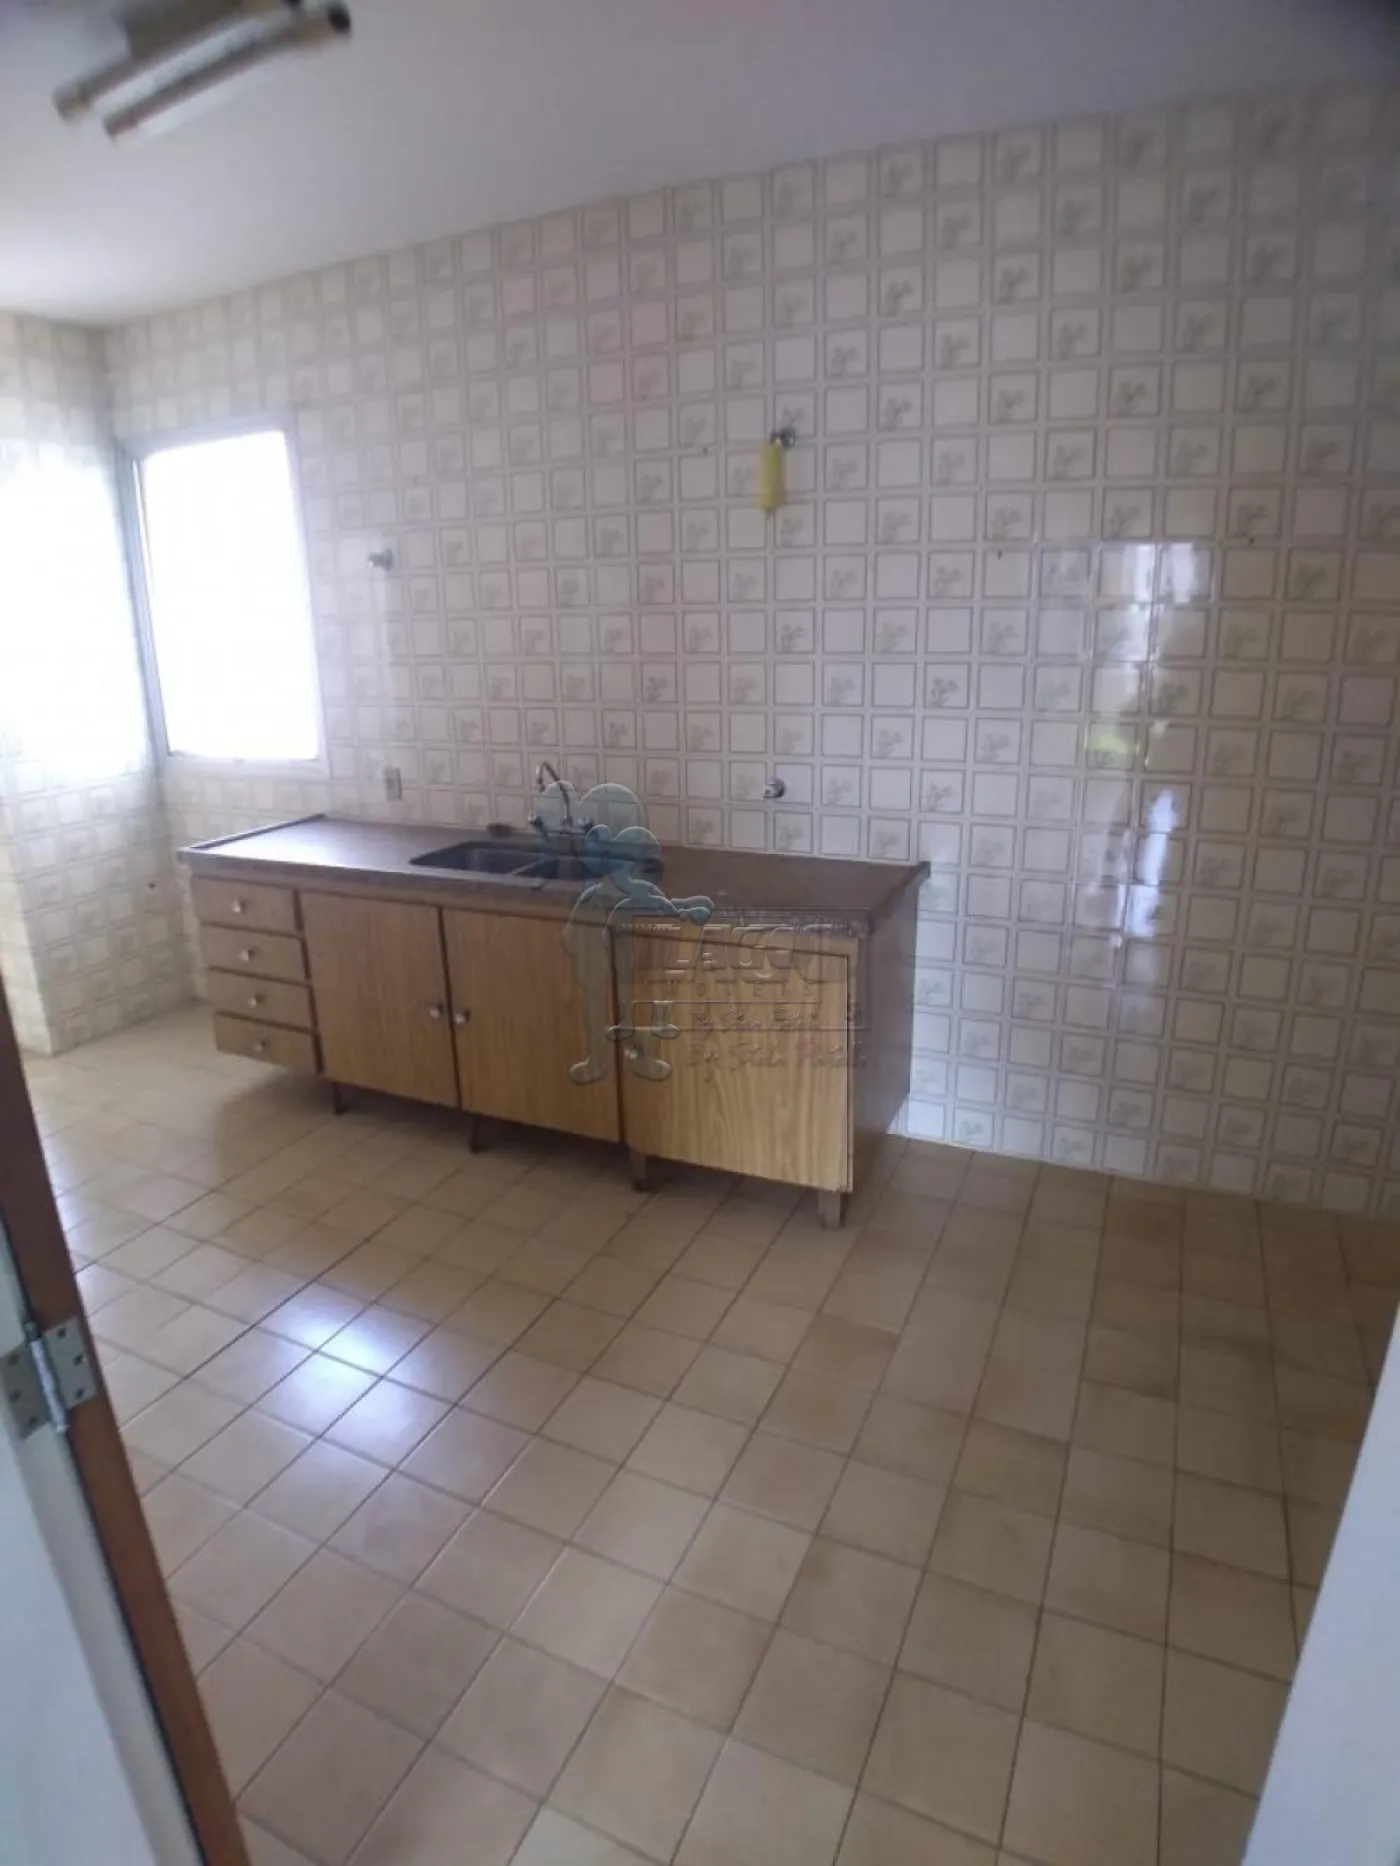 Comprar Apartamentos / Padrão em Ribeirão Preto R$ 424.000,00 - Foto 4